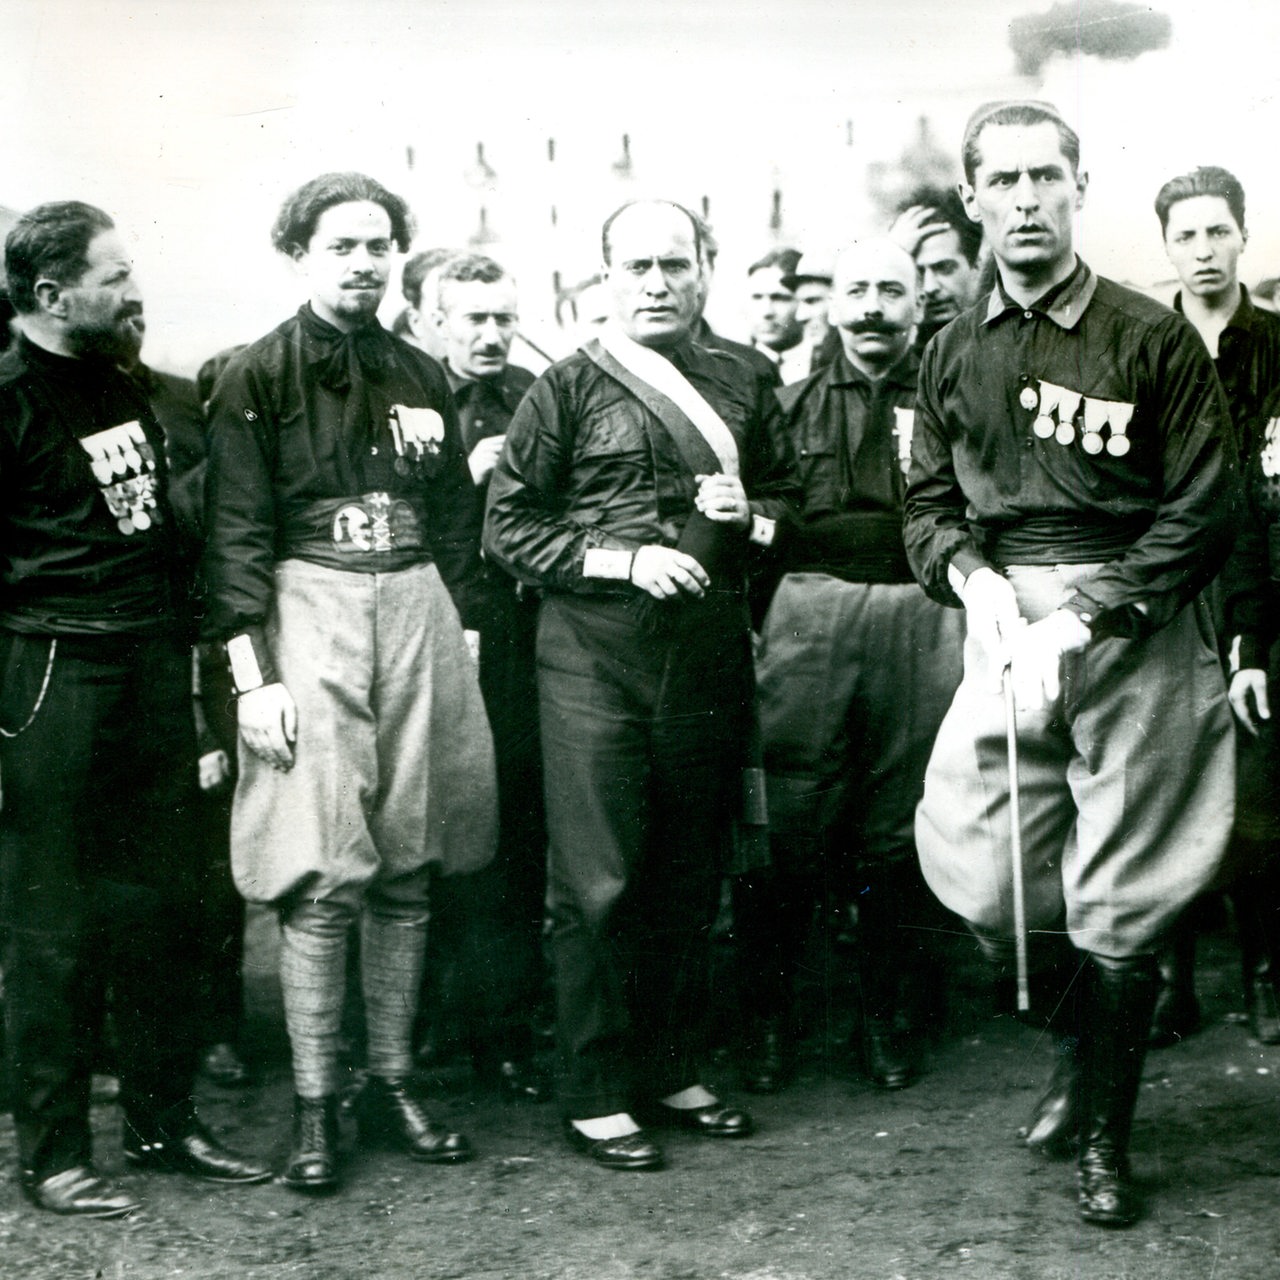 Mussolini beim Marsch auf Rom am 28.10.1922